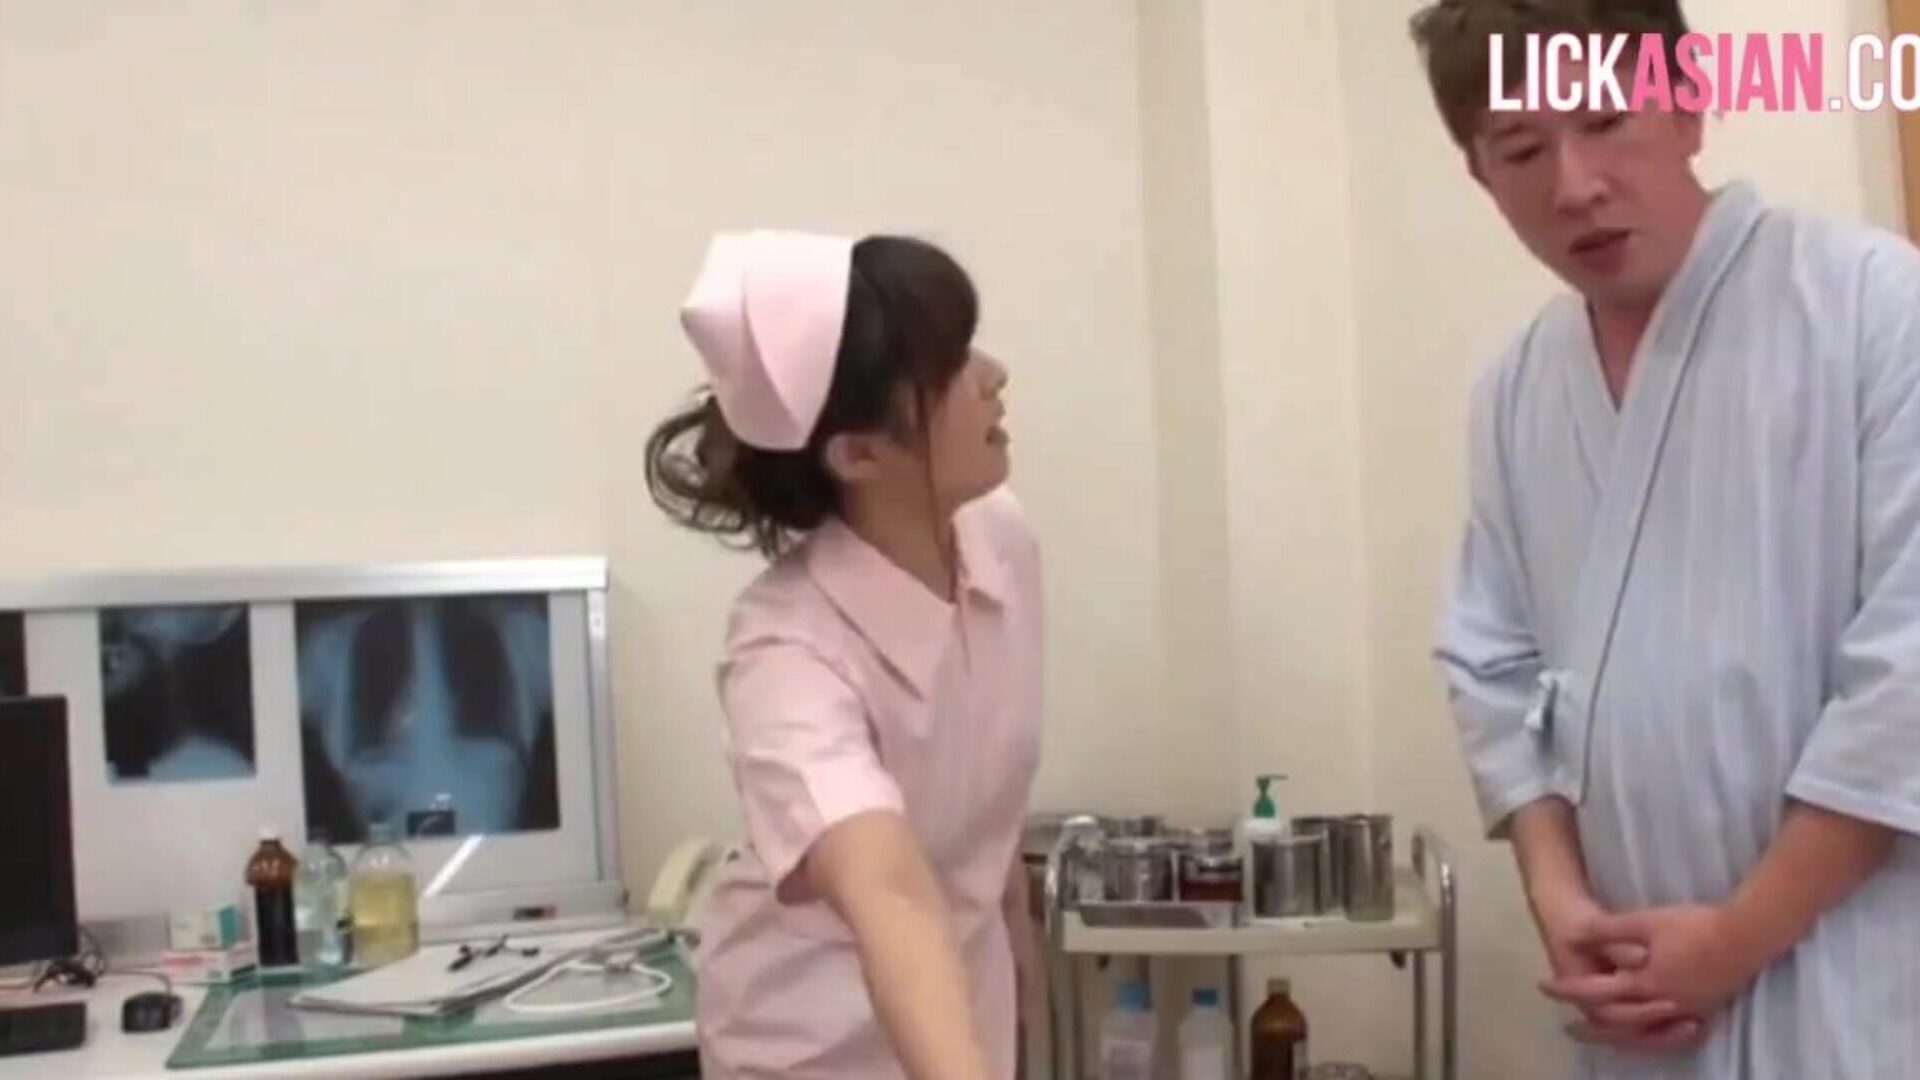 asijská sestra aplikuje na pacienta drsnou léčbu šokem